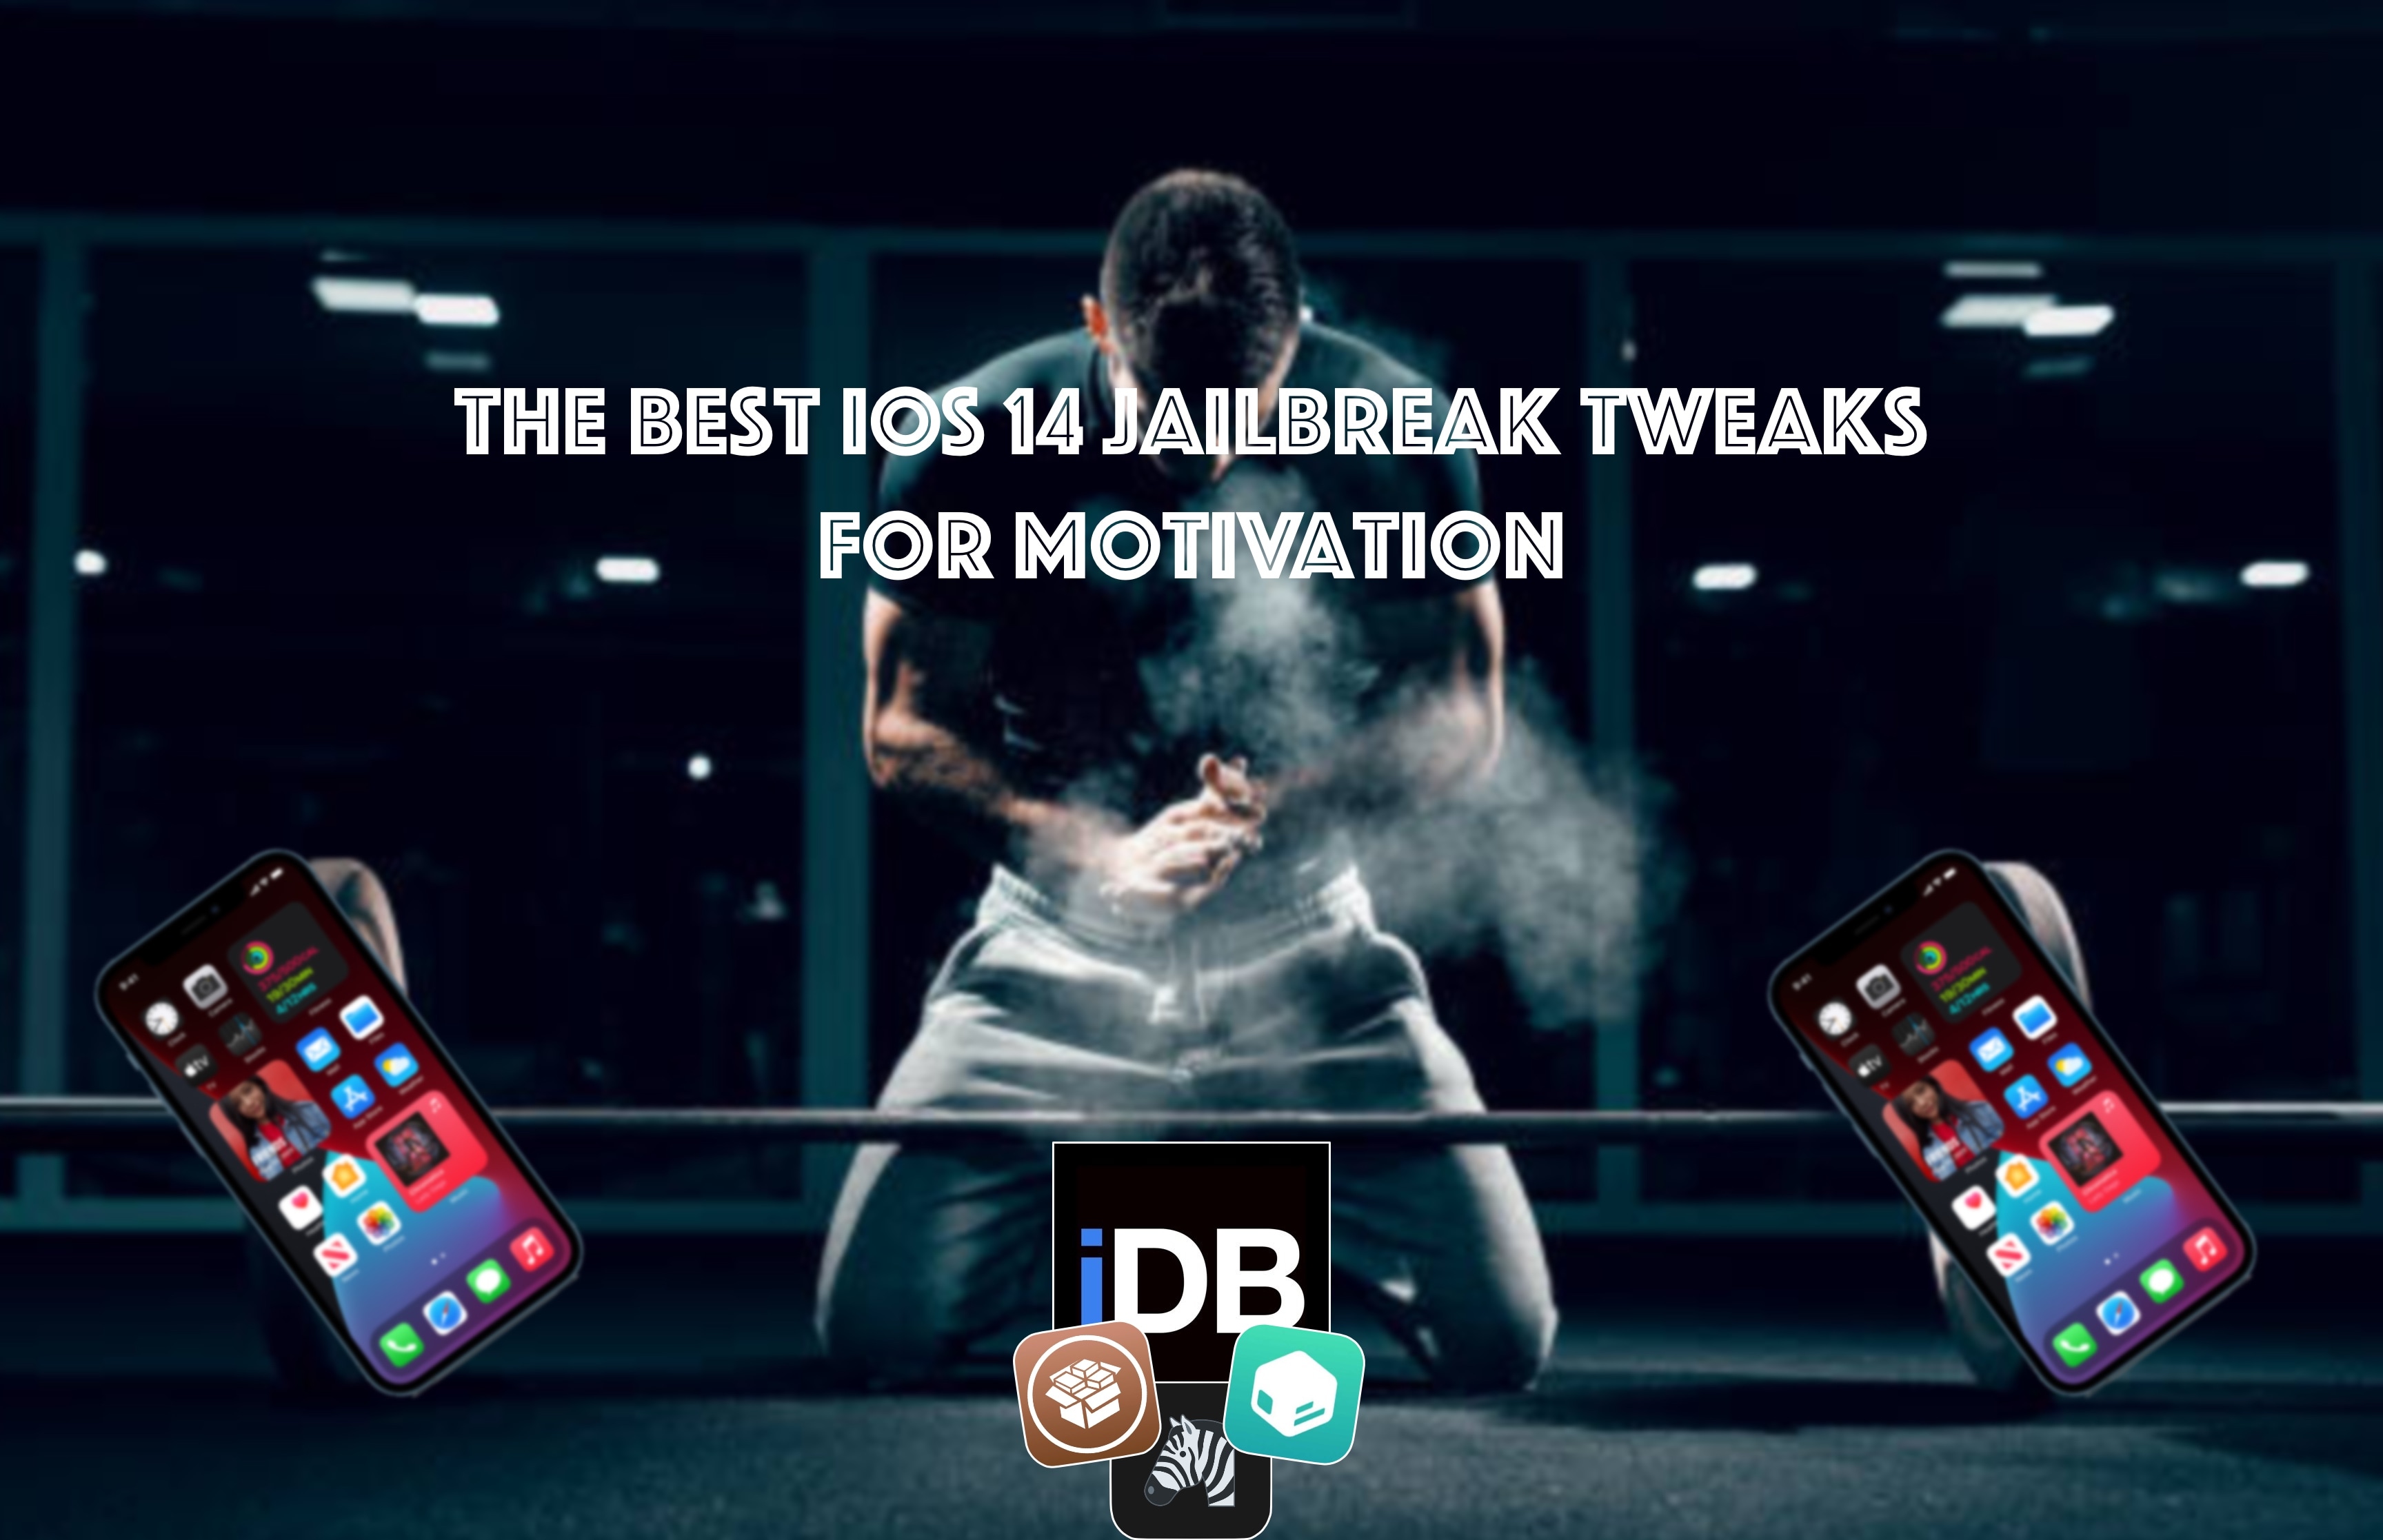 Jailbreak tweaks to stay motivated.